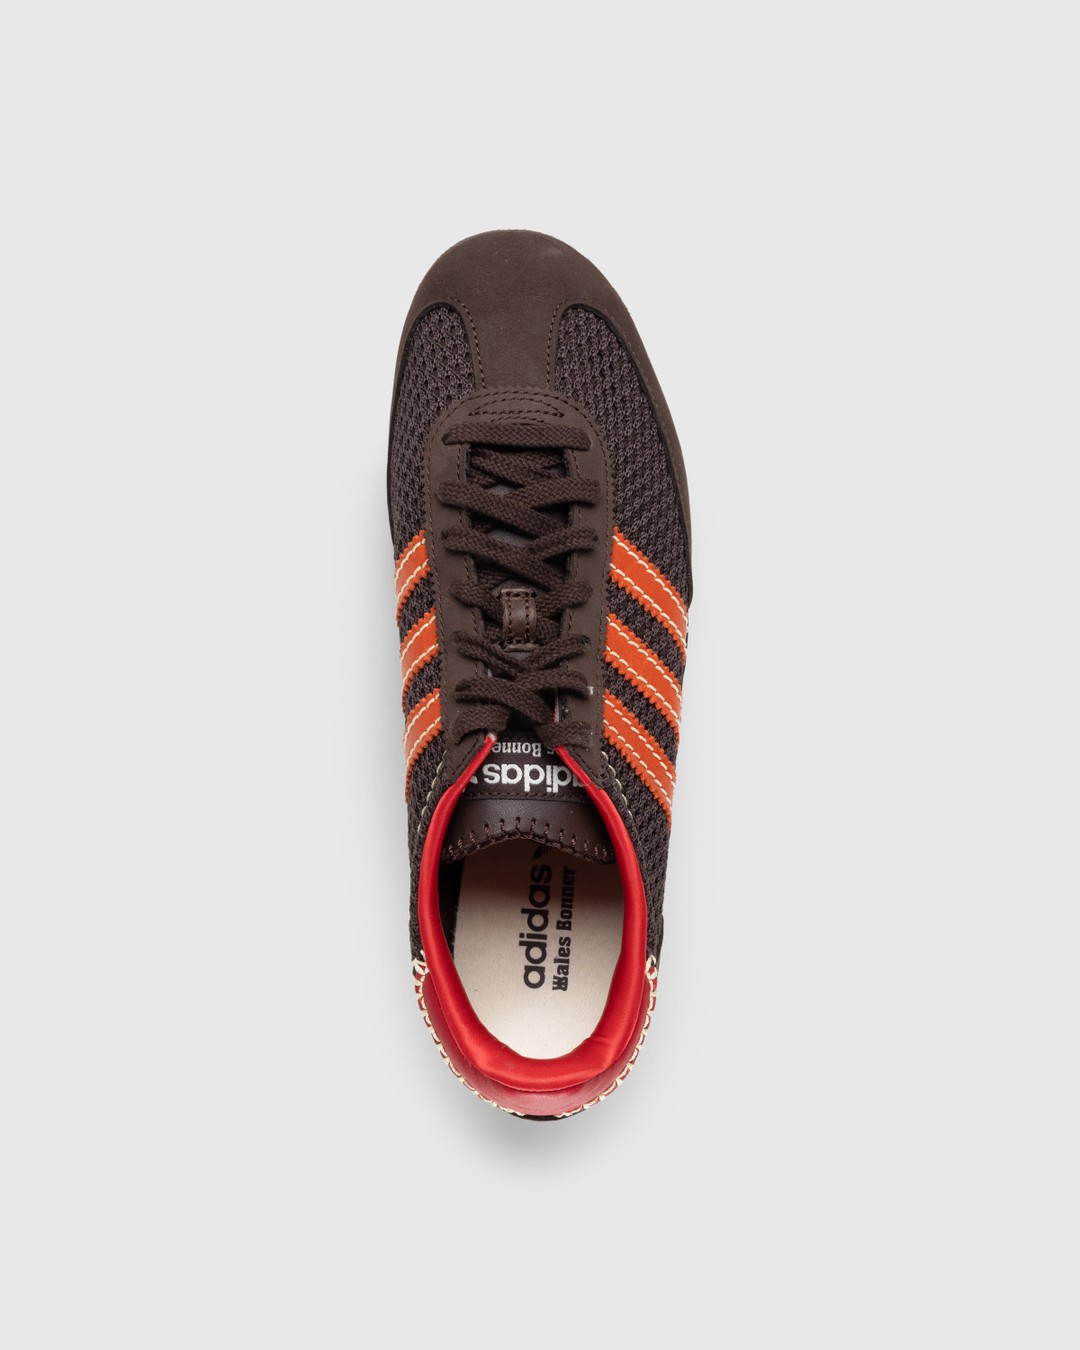 Adidas x Wales Bonner – SL72 Knit Dark Brown - Sneakers - Brown - Image 5